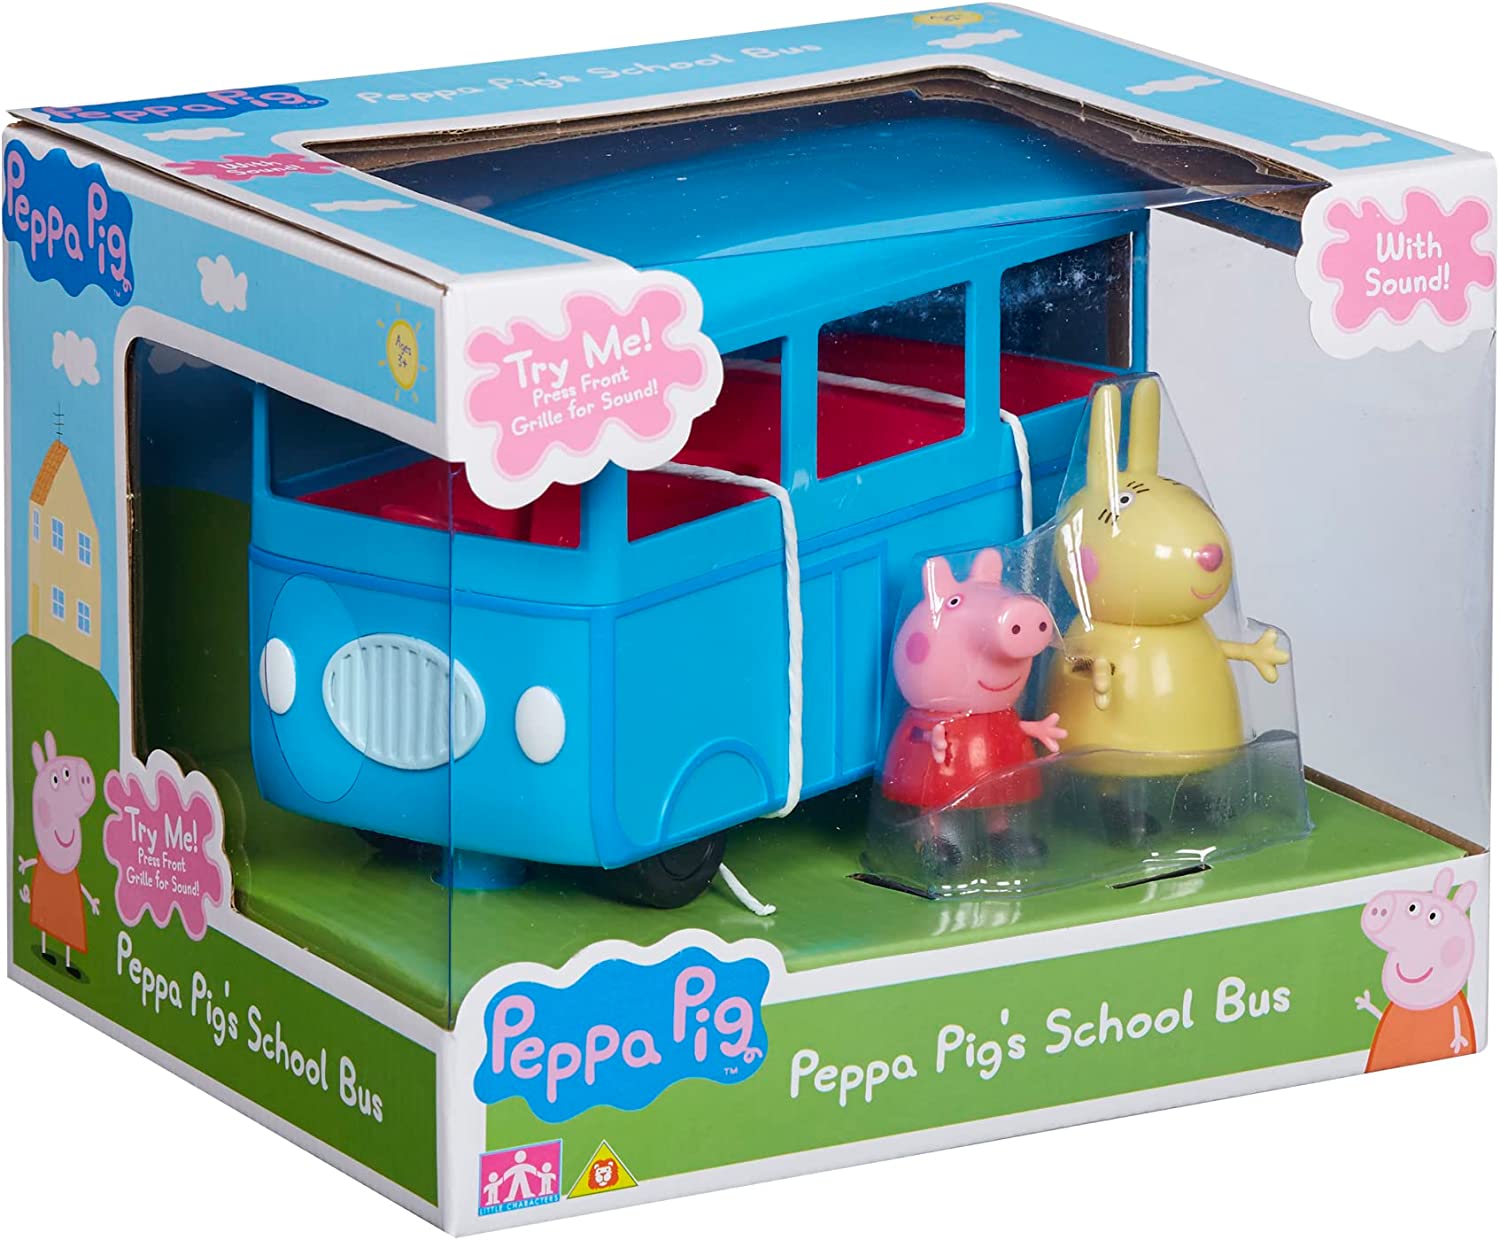 Peppa Pig - School Bus